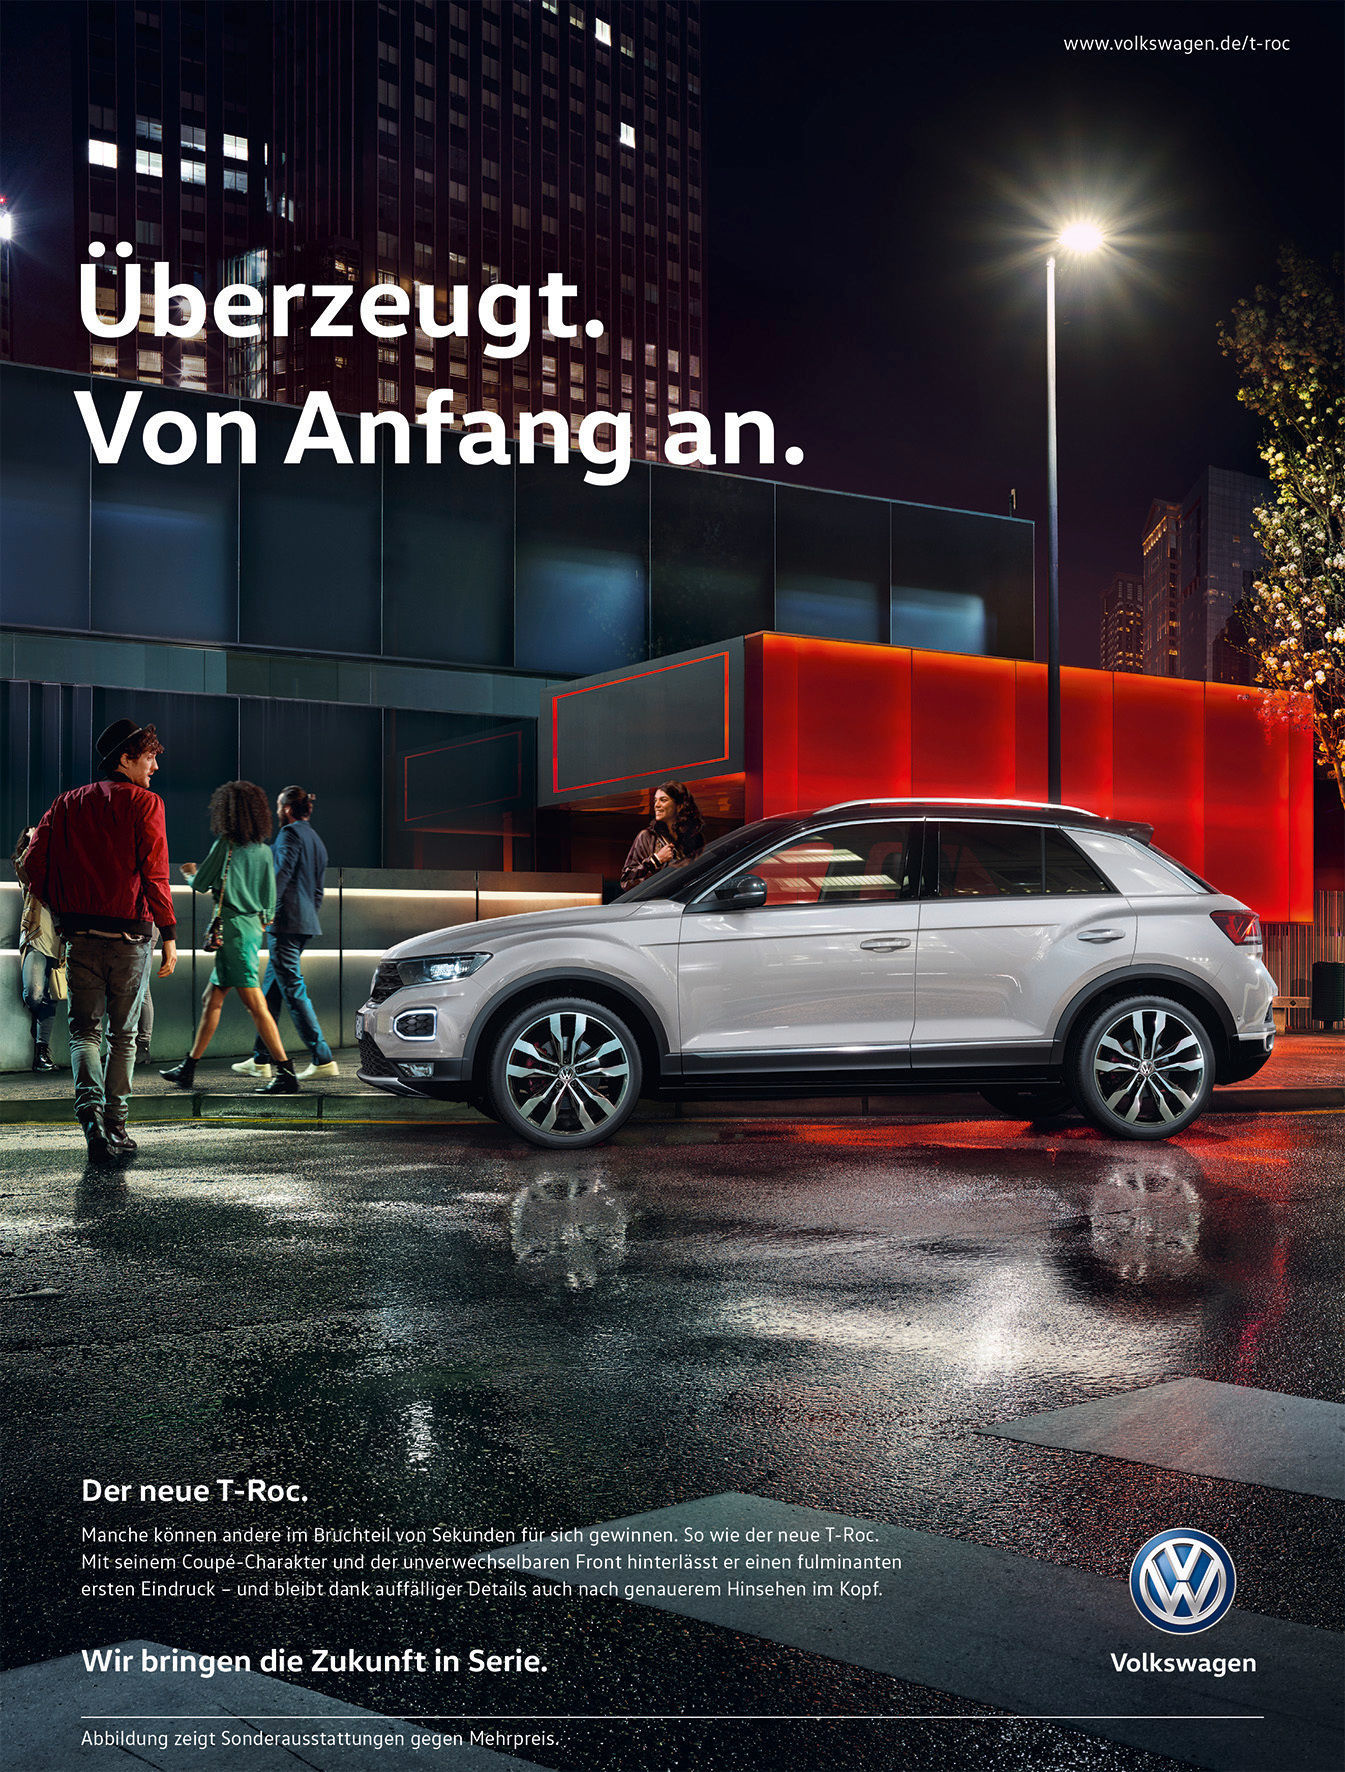 Volkswagen startet internationale Marketingkampagne für neuen T-Roc